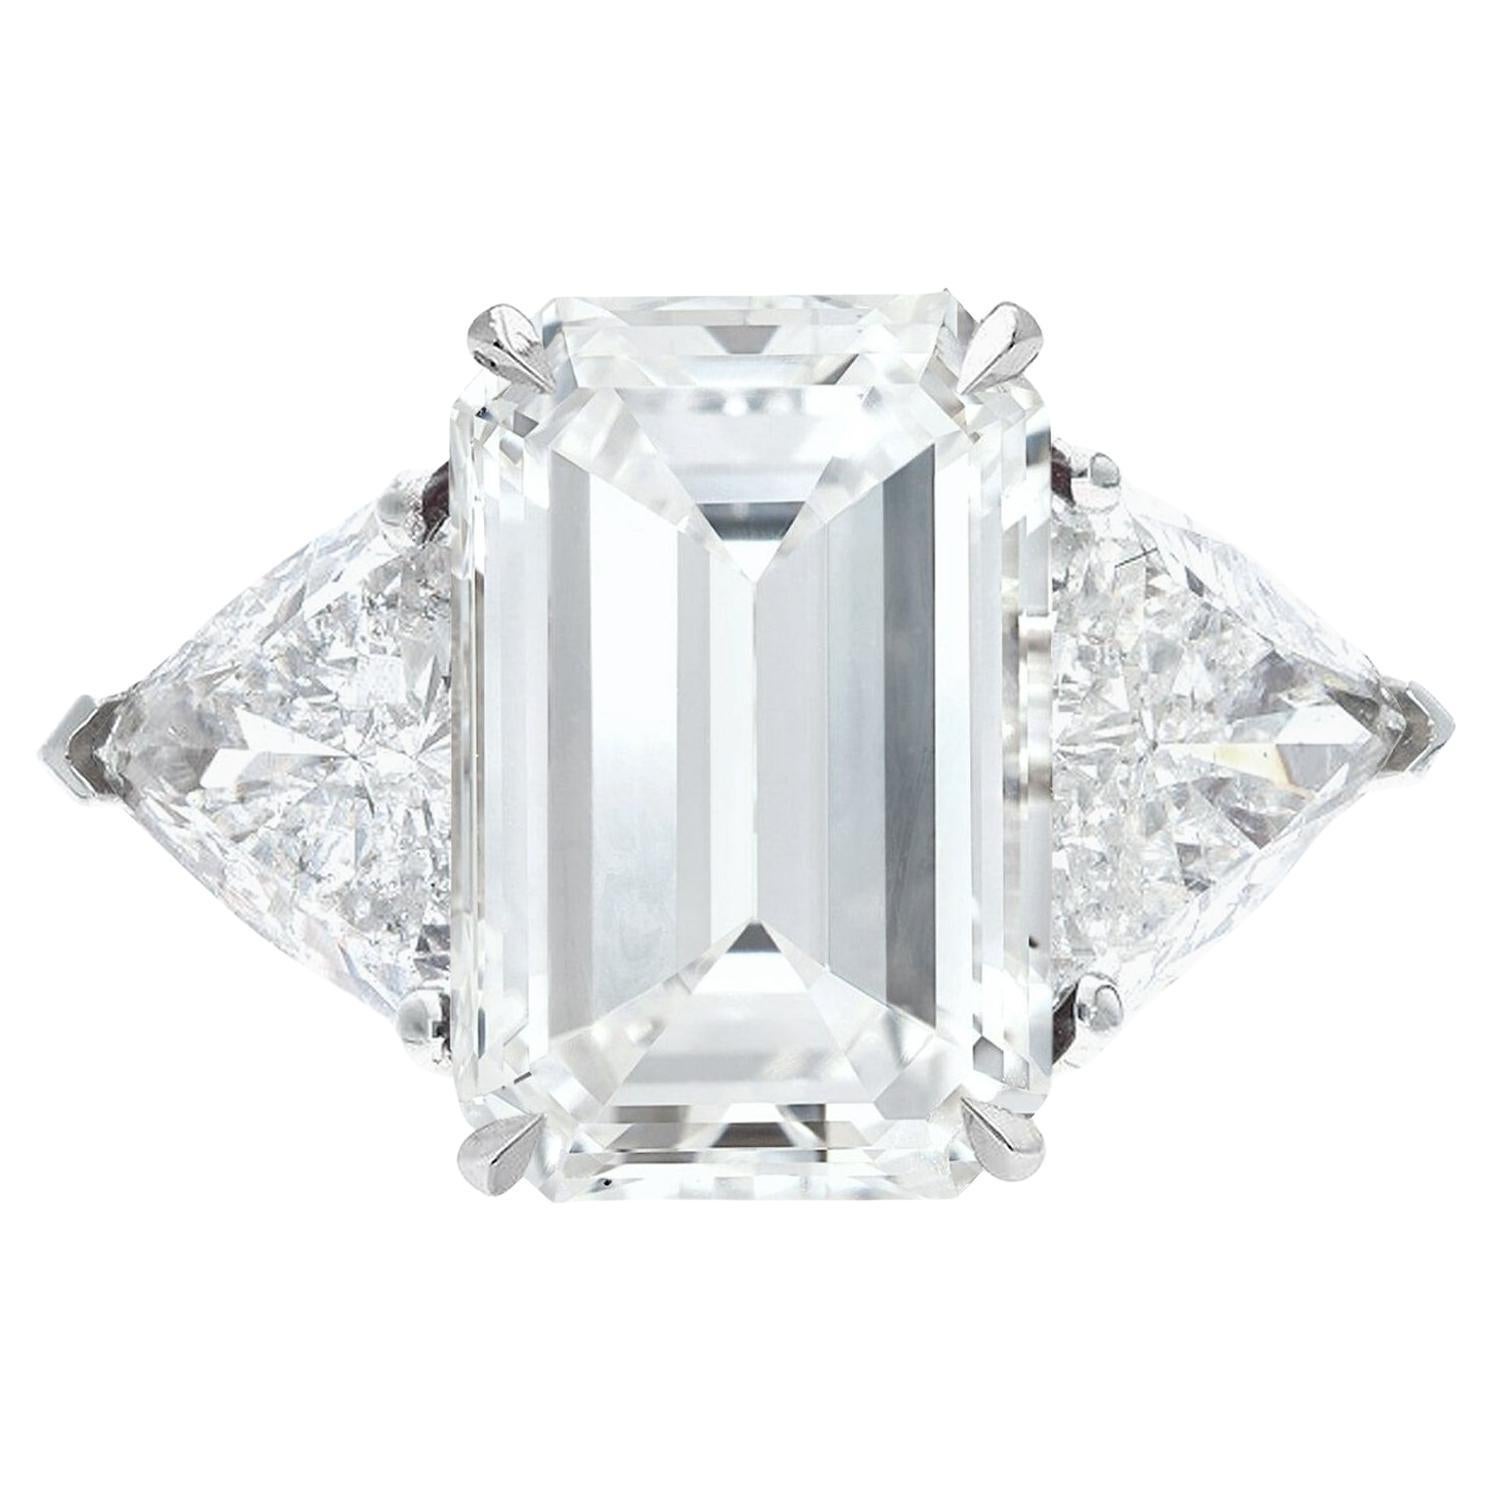 Flawless GIA Certified 5 Carat Emerald Cut Diamond Ring Golconda Type IIA For Sale